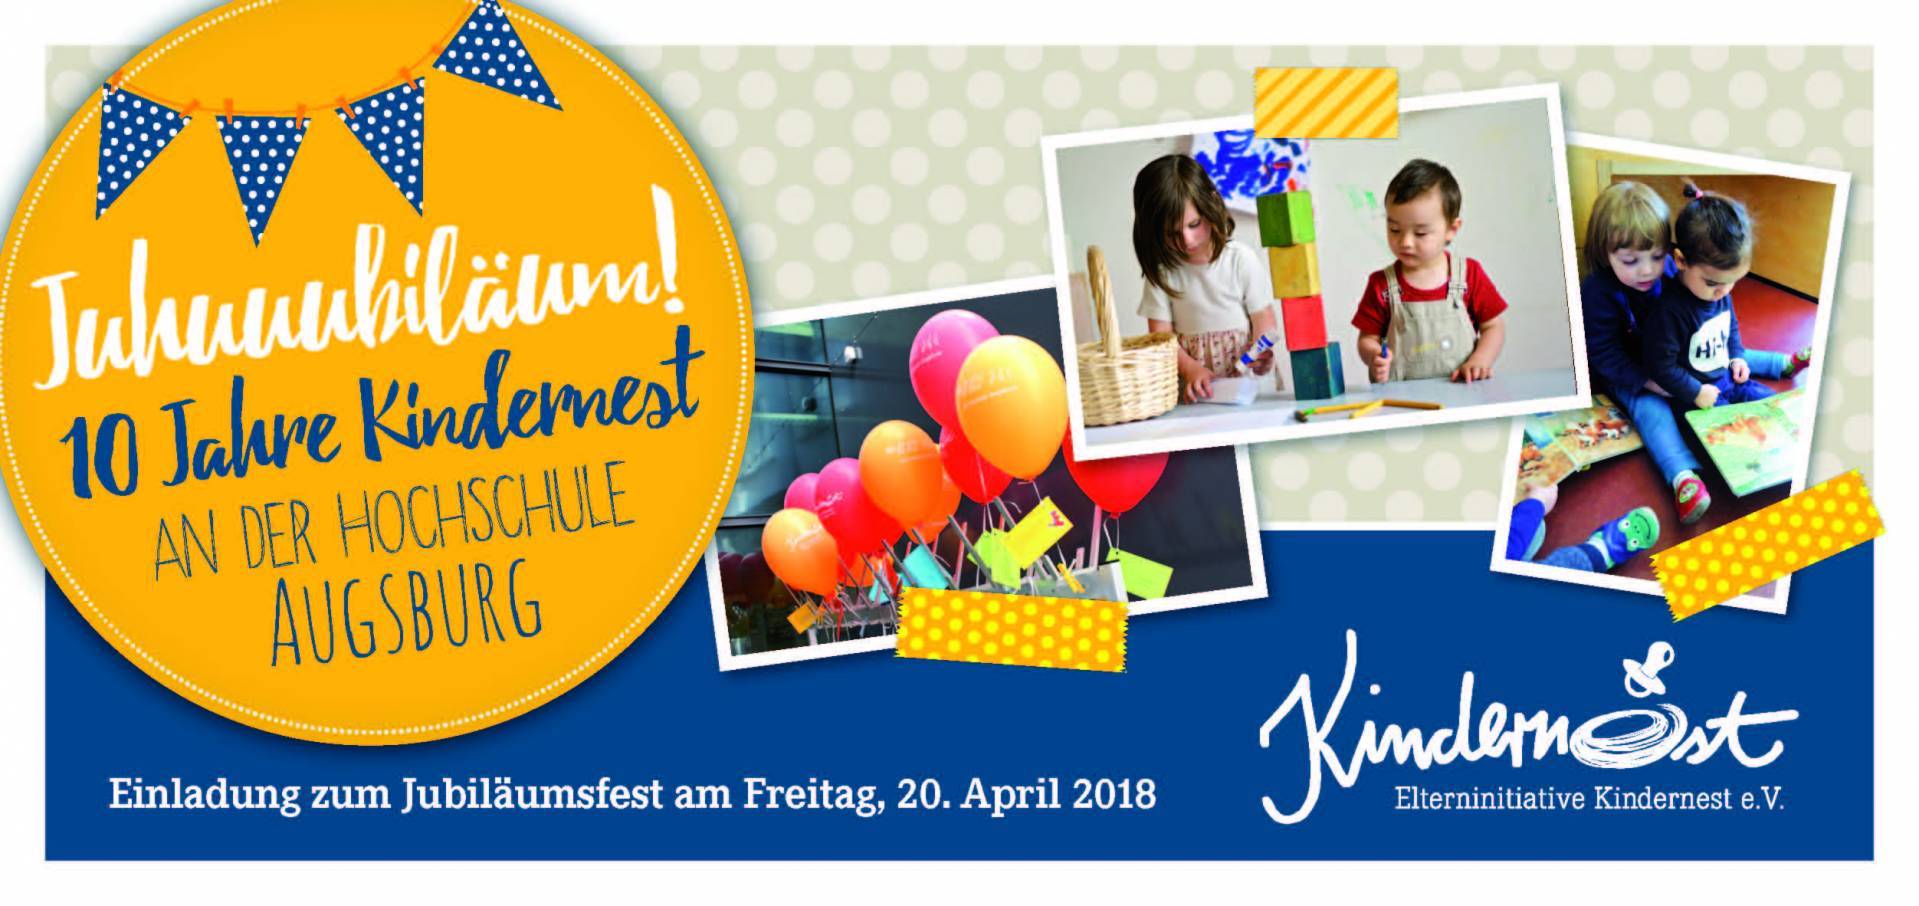 Juhuuubiläum – 10 Jahre Kindernest an der Hochschule Augsburg